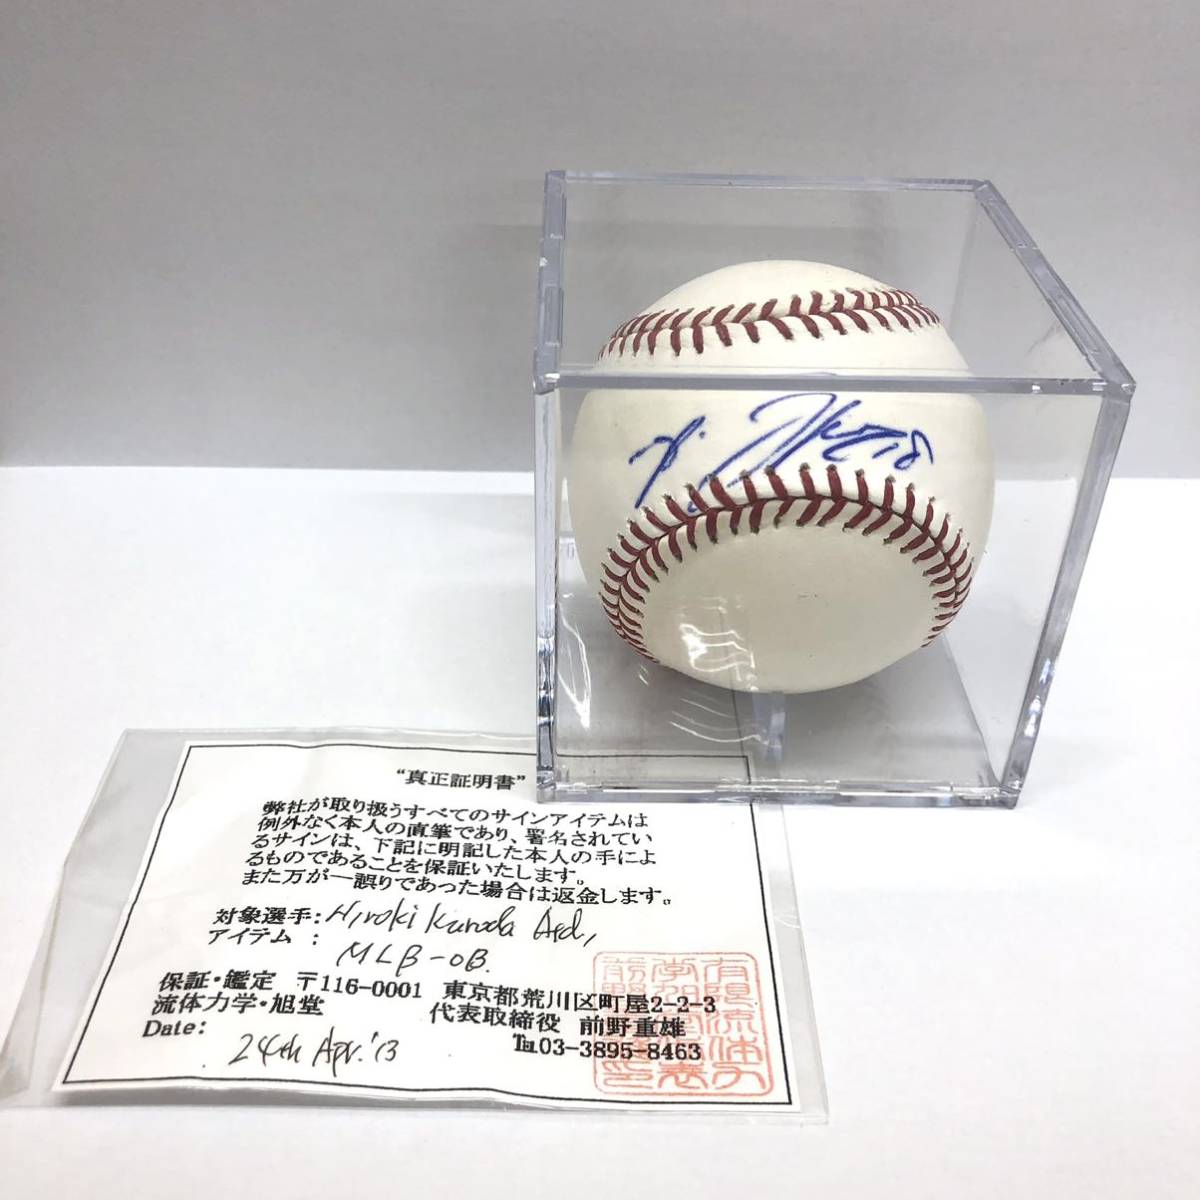 黒田博樹 MLB-OB 直筆サインボール MLB公式球 真正証明書付き 広島 